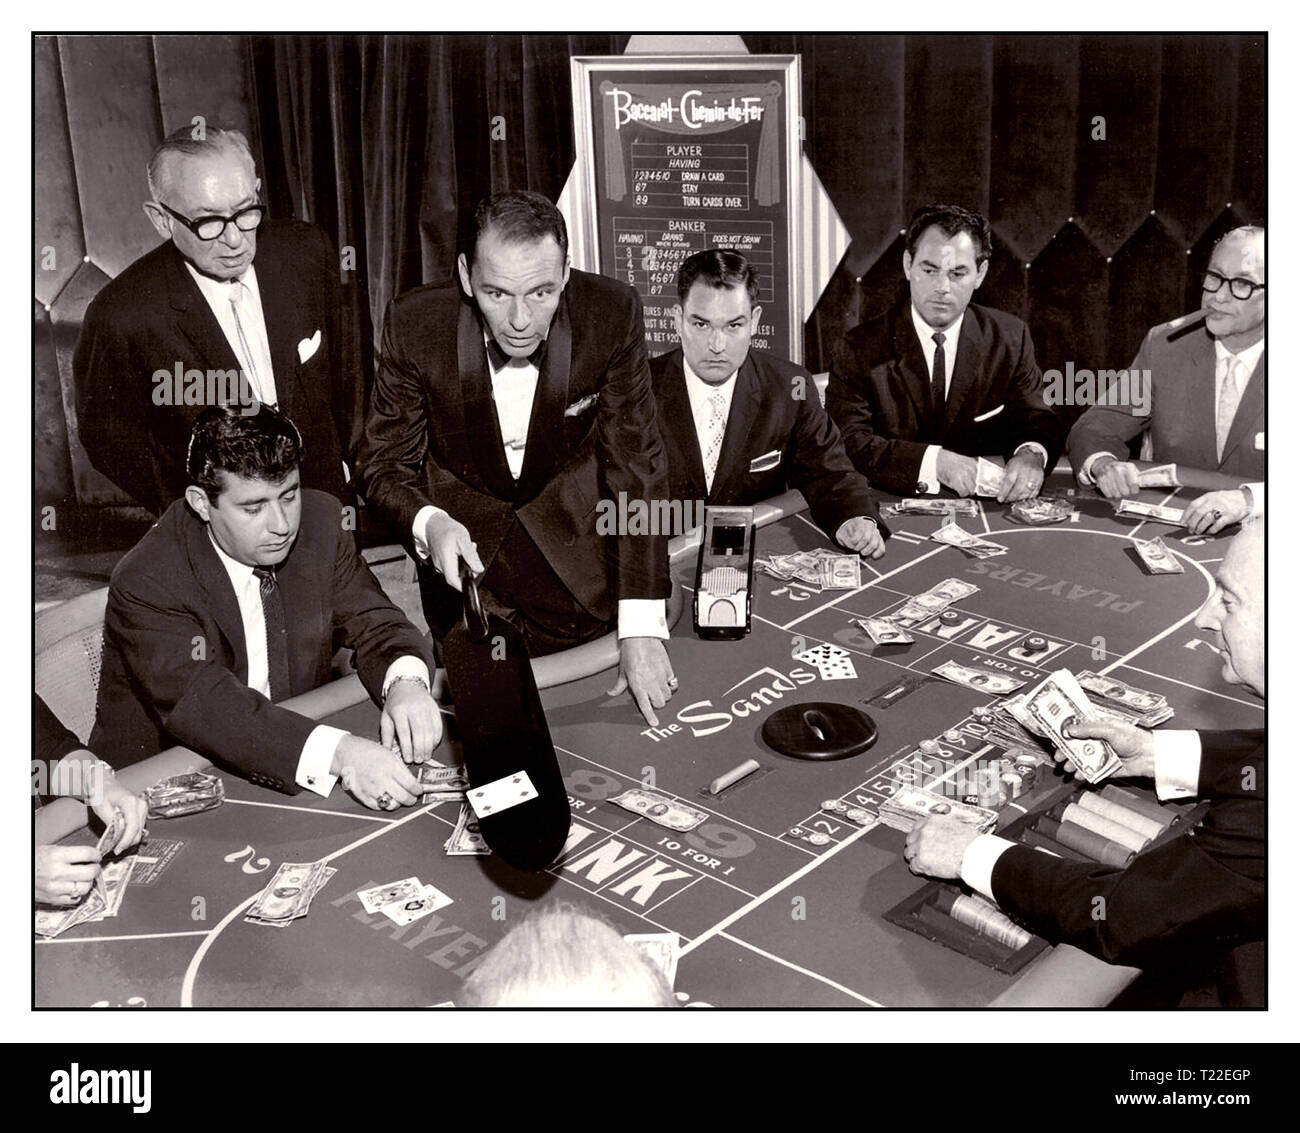 Frank Sinatra aus den 1950er Jahren von Las Vegas in formeller schwarzer Krawatte Dinner Jackett, in Spielsituation mit Bakkarat im Sands Casino, Las Vegas, November 1959 Sands Casino Las Vegas Nevada USA Stockfoto